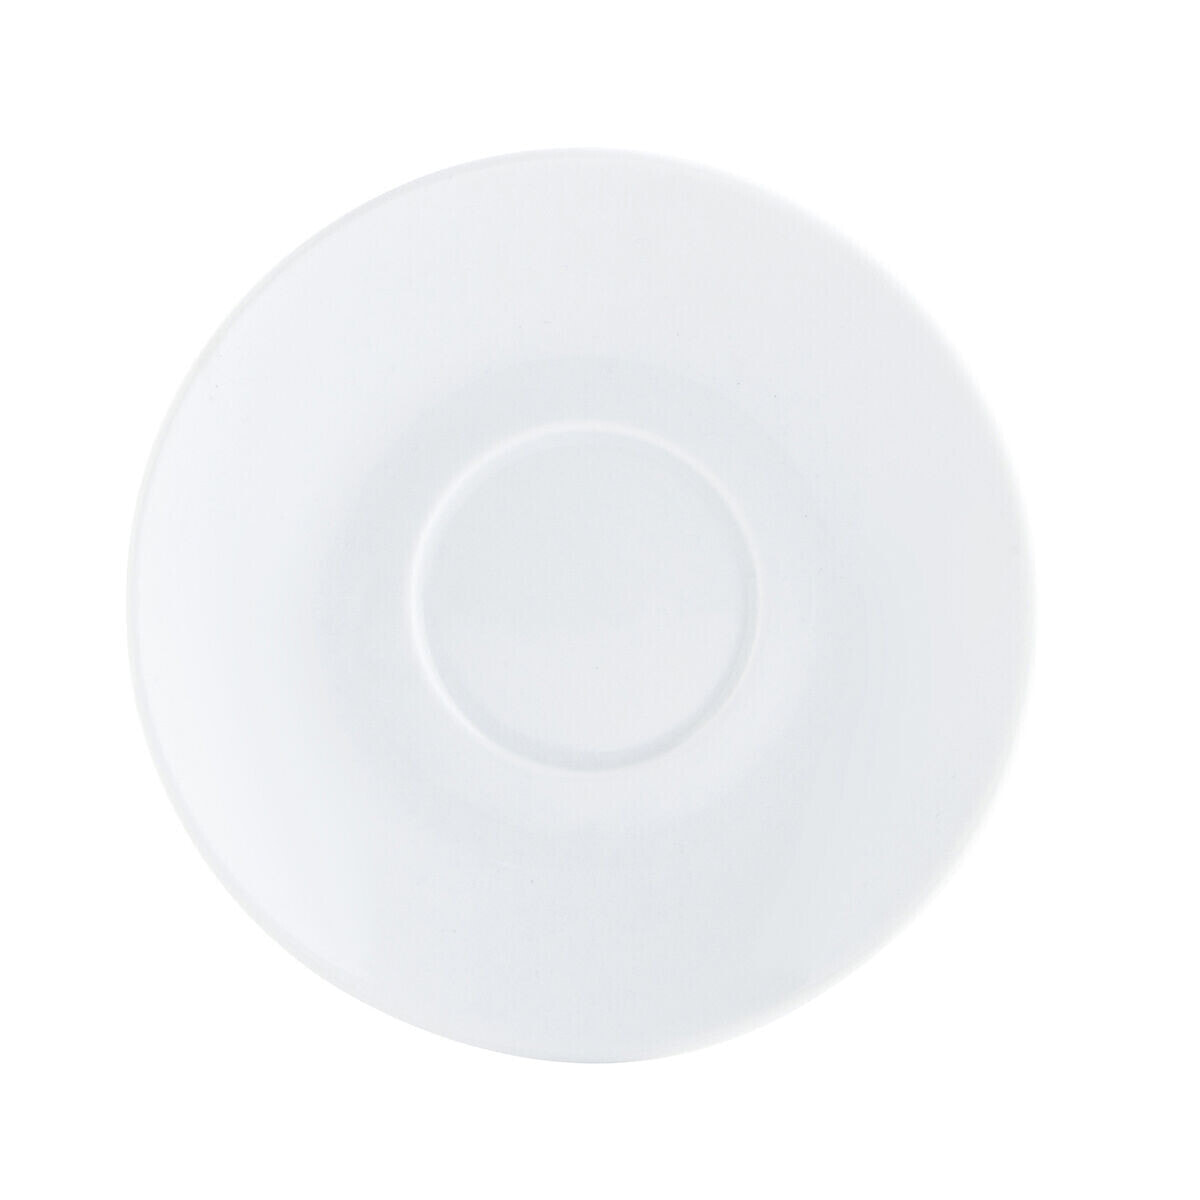 Plate Quid Basic Ceramic White (15,5 cm) (Pack 12x)